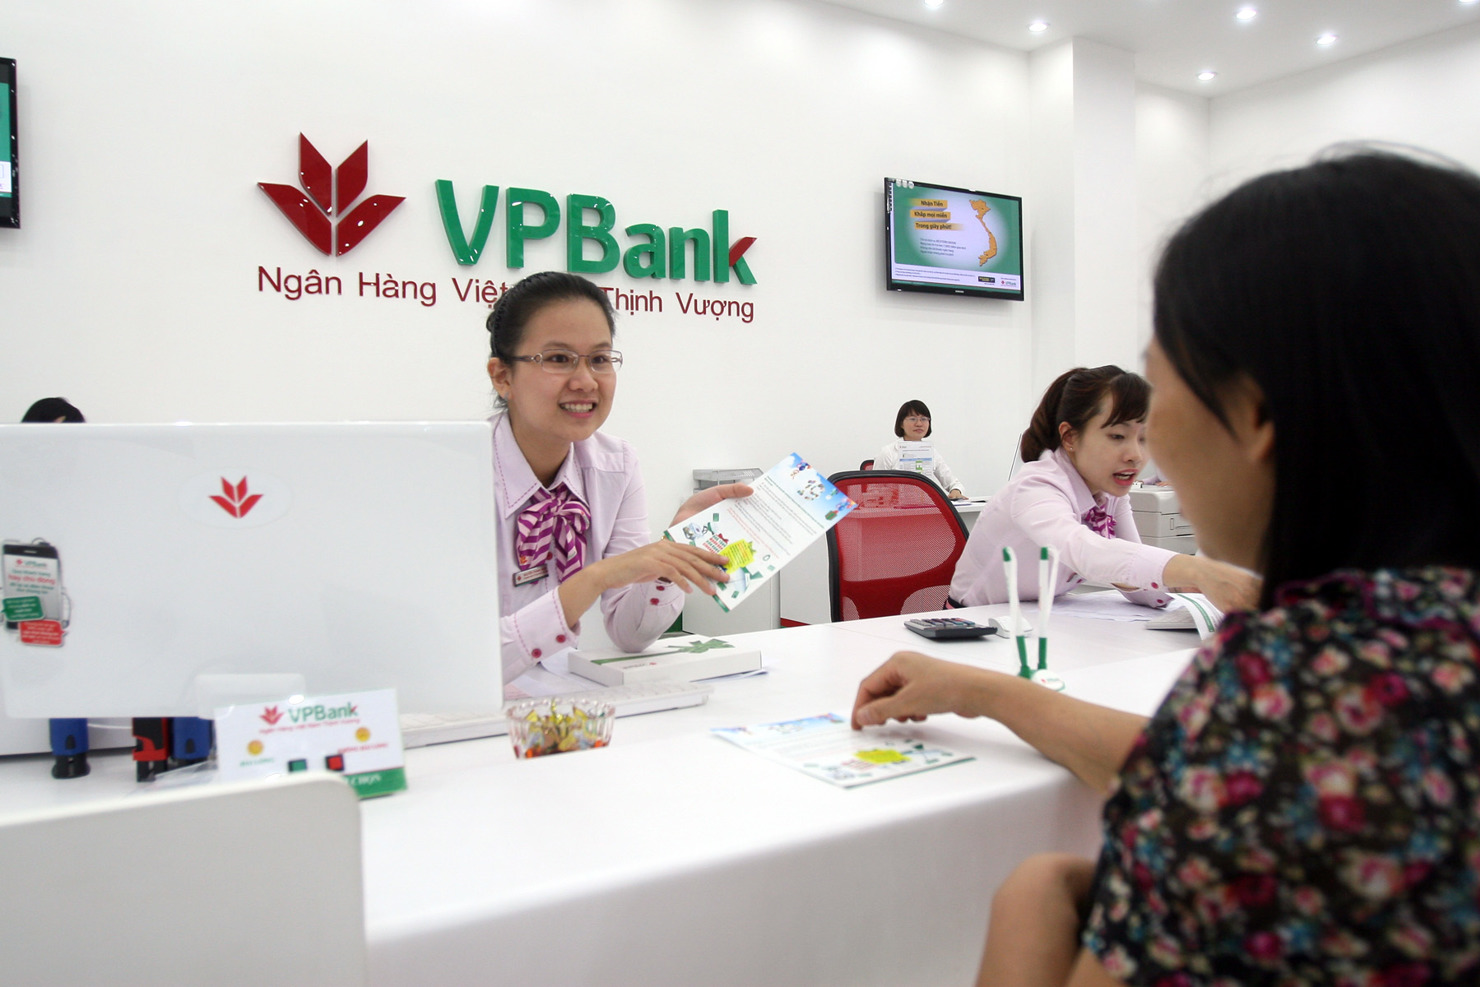 VPBank miễn phí sử dụng tài khoản thanh toán trong 12 tháng với nhiều quà tặng khi khách hàng mở thẻ. Nguồn: VPBank.